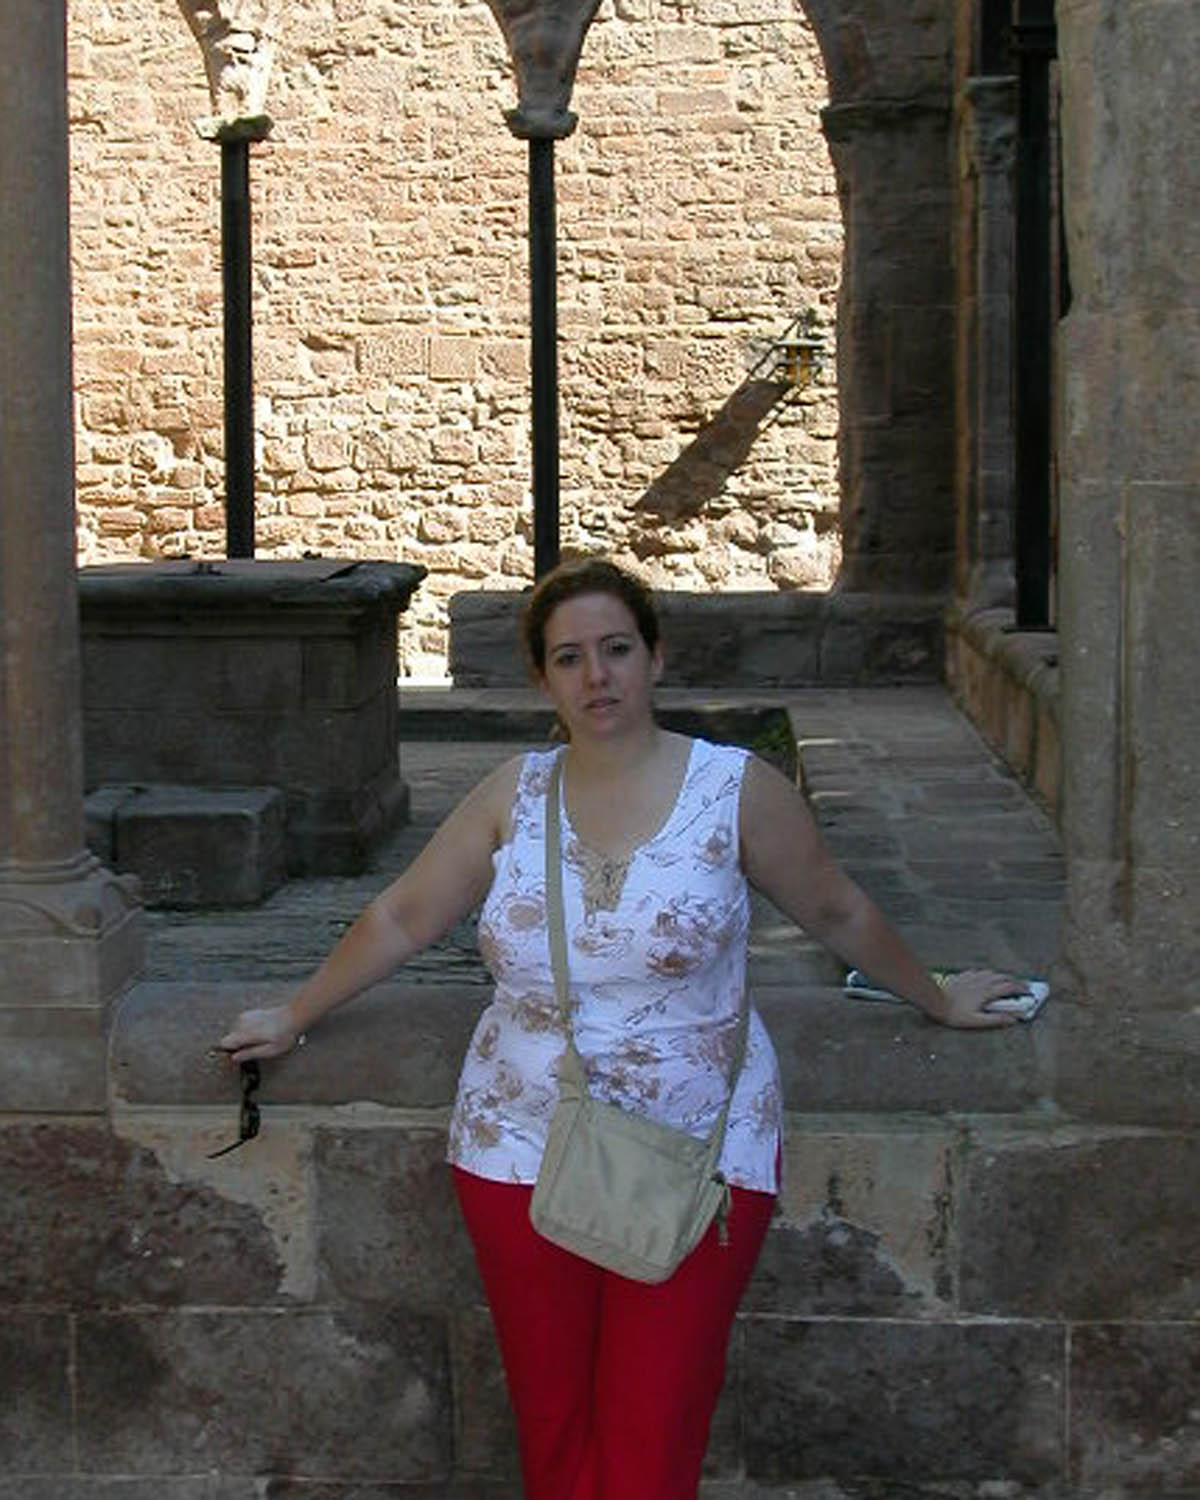 Esta soy yo en el Castillo de Cardona, actualmente el Parador de Cardona